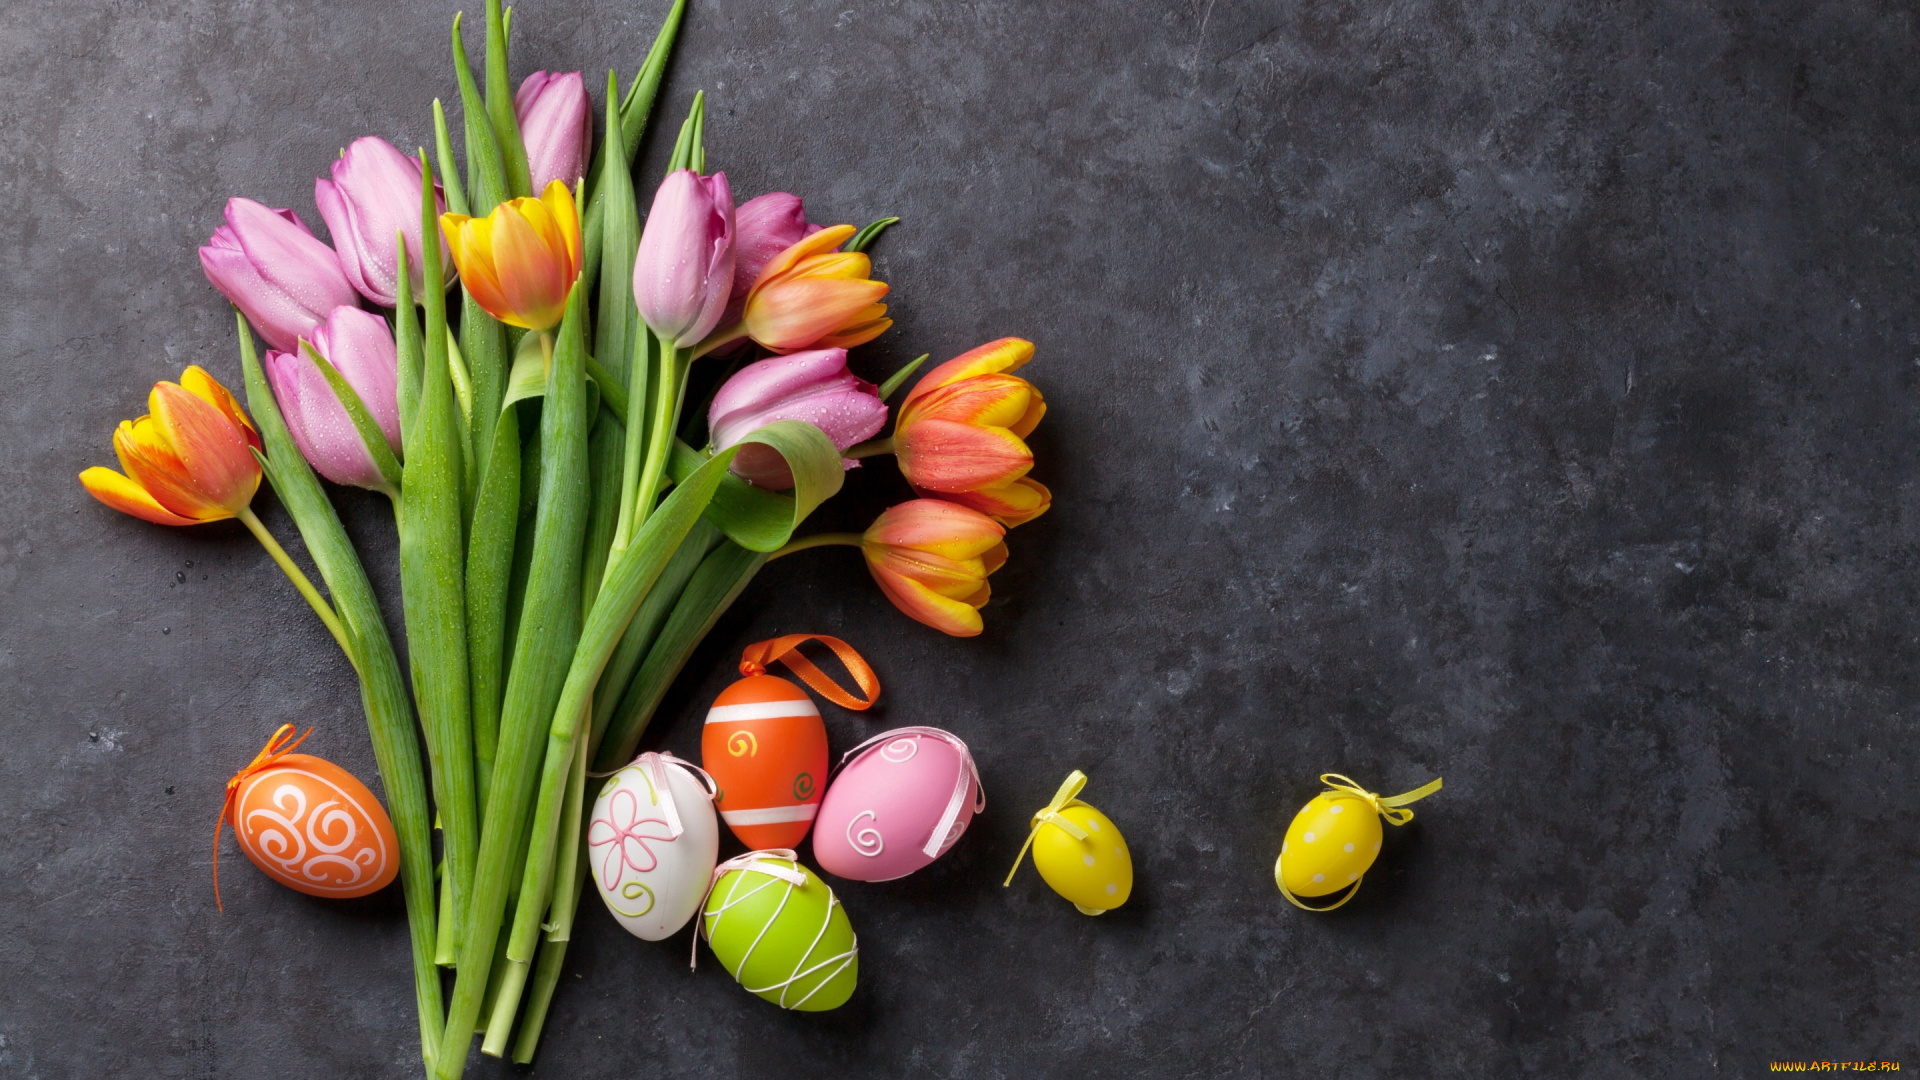 праздничные, пасха, tulips, цветы, eggs, тюльпаны, spring, яйца, крашеные, pink, easter, decoration, flowers, happy, розовые, colorful